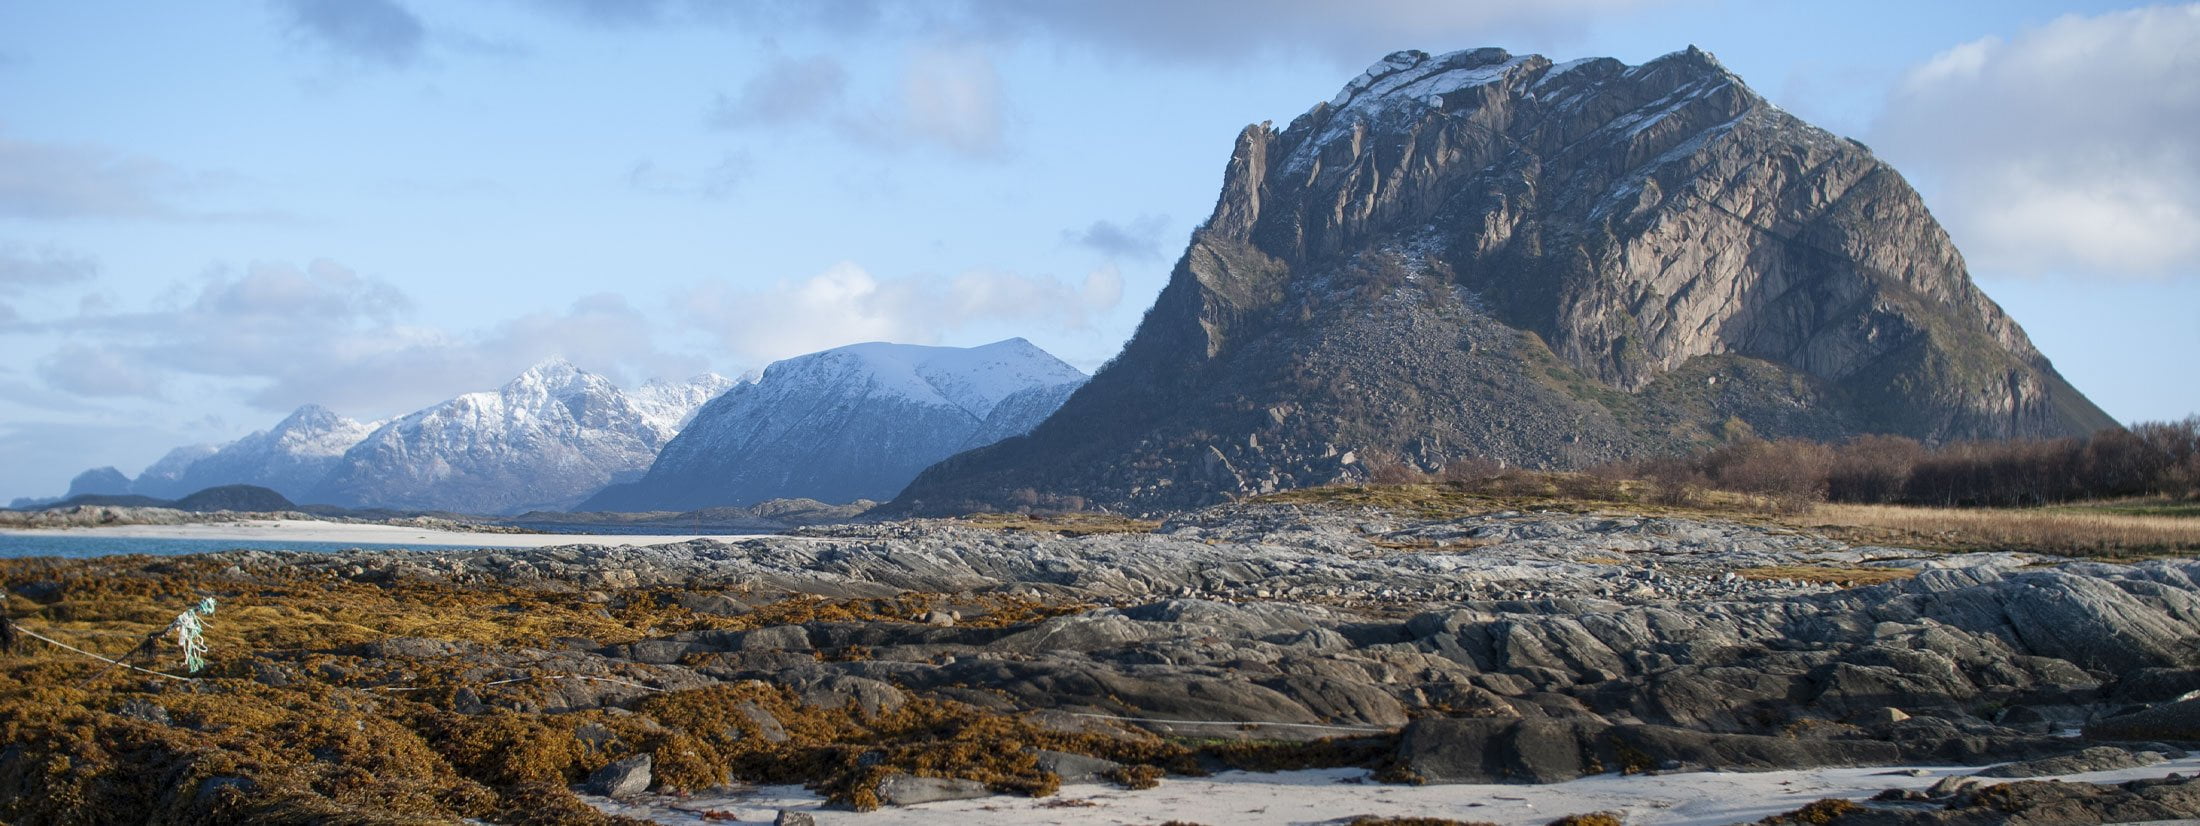 Mjeldberget mountain at Engeløya island Steigen, Norway